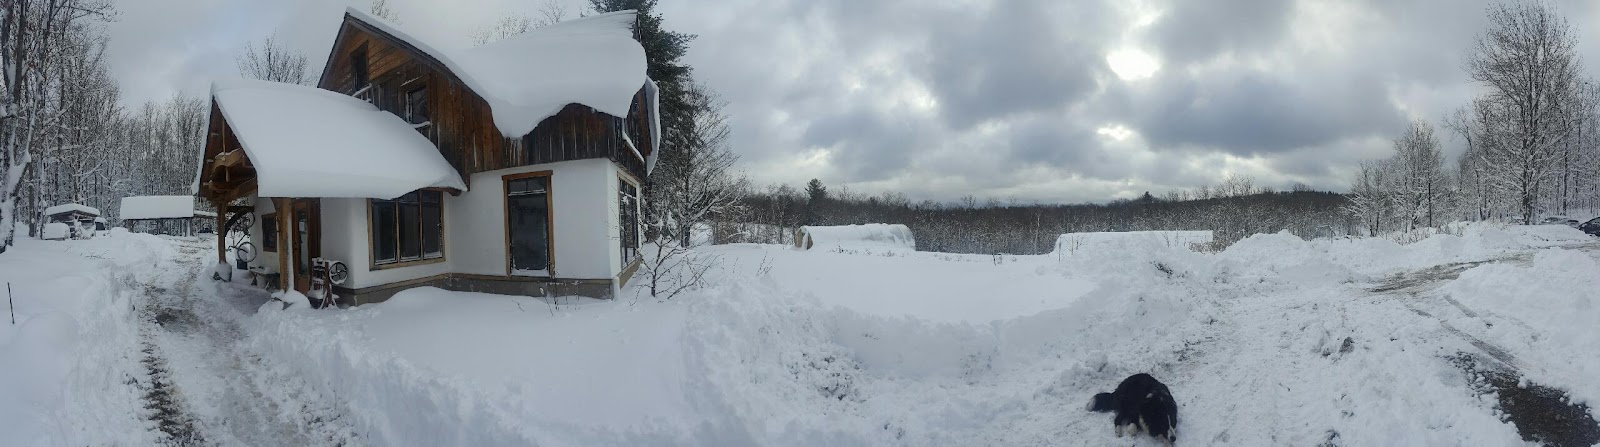 snowy farm by Naima.jpg